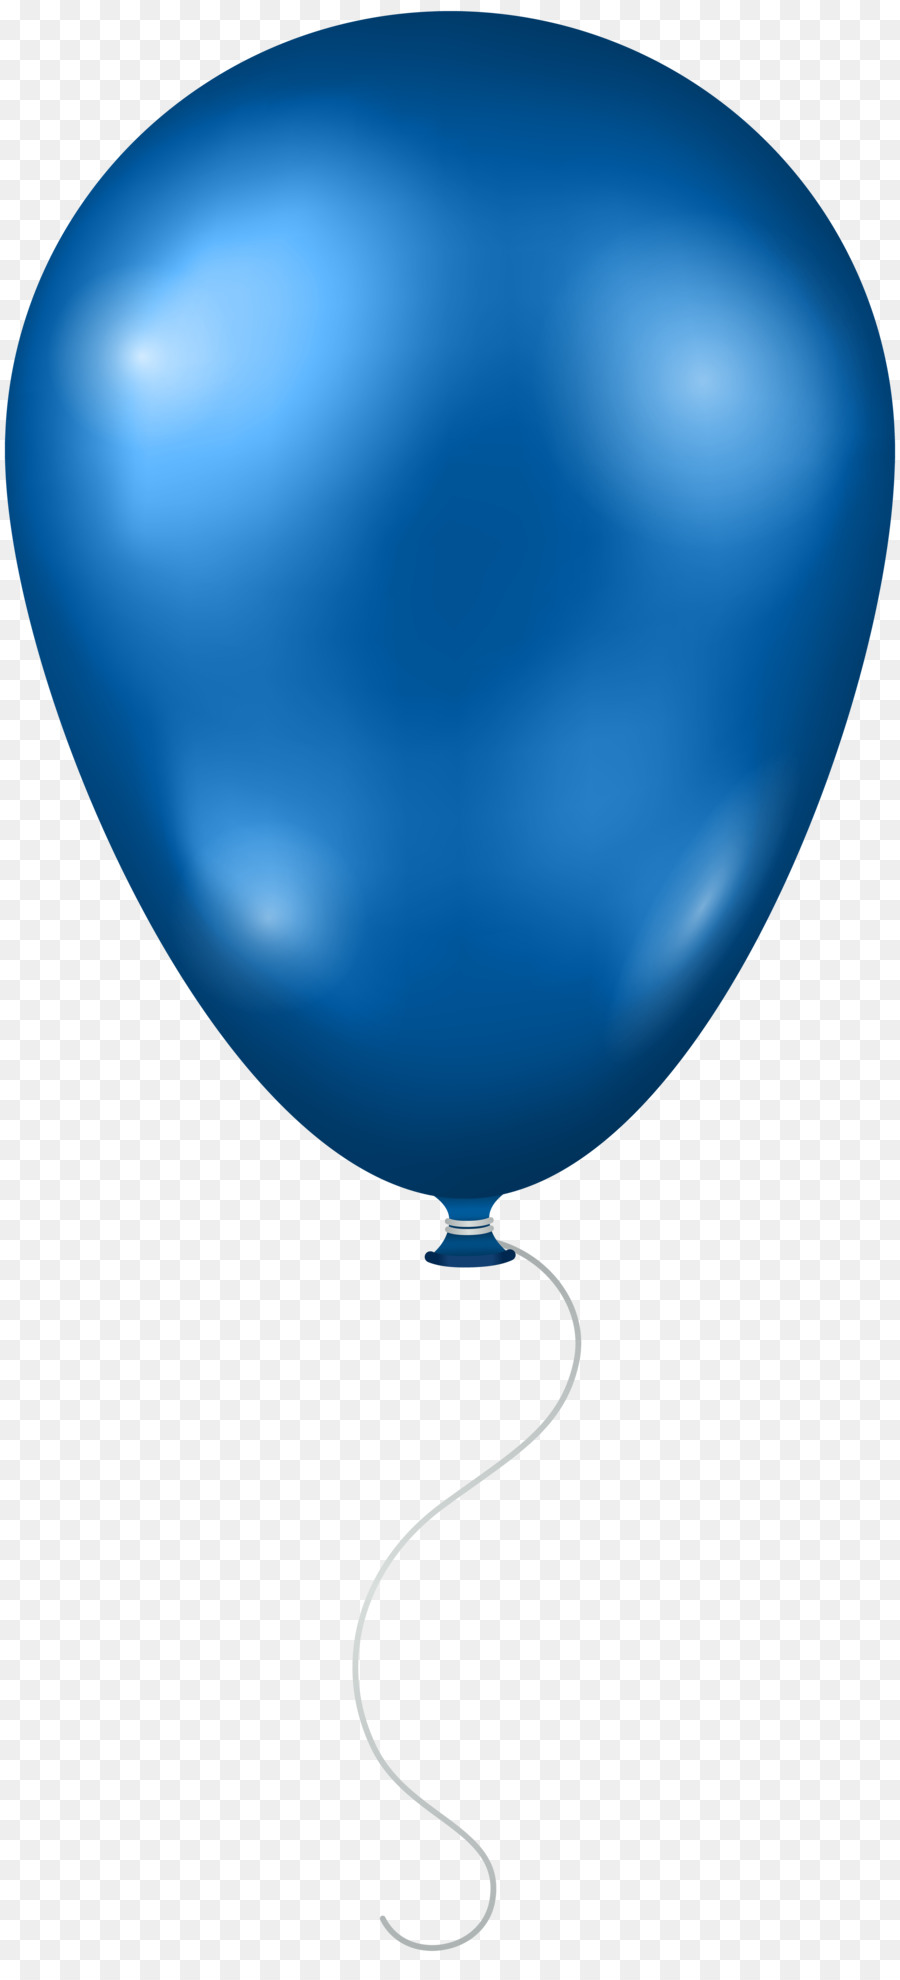 Birthday Balloon Cartoon